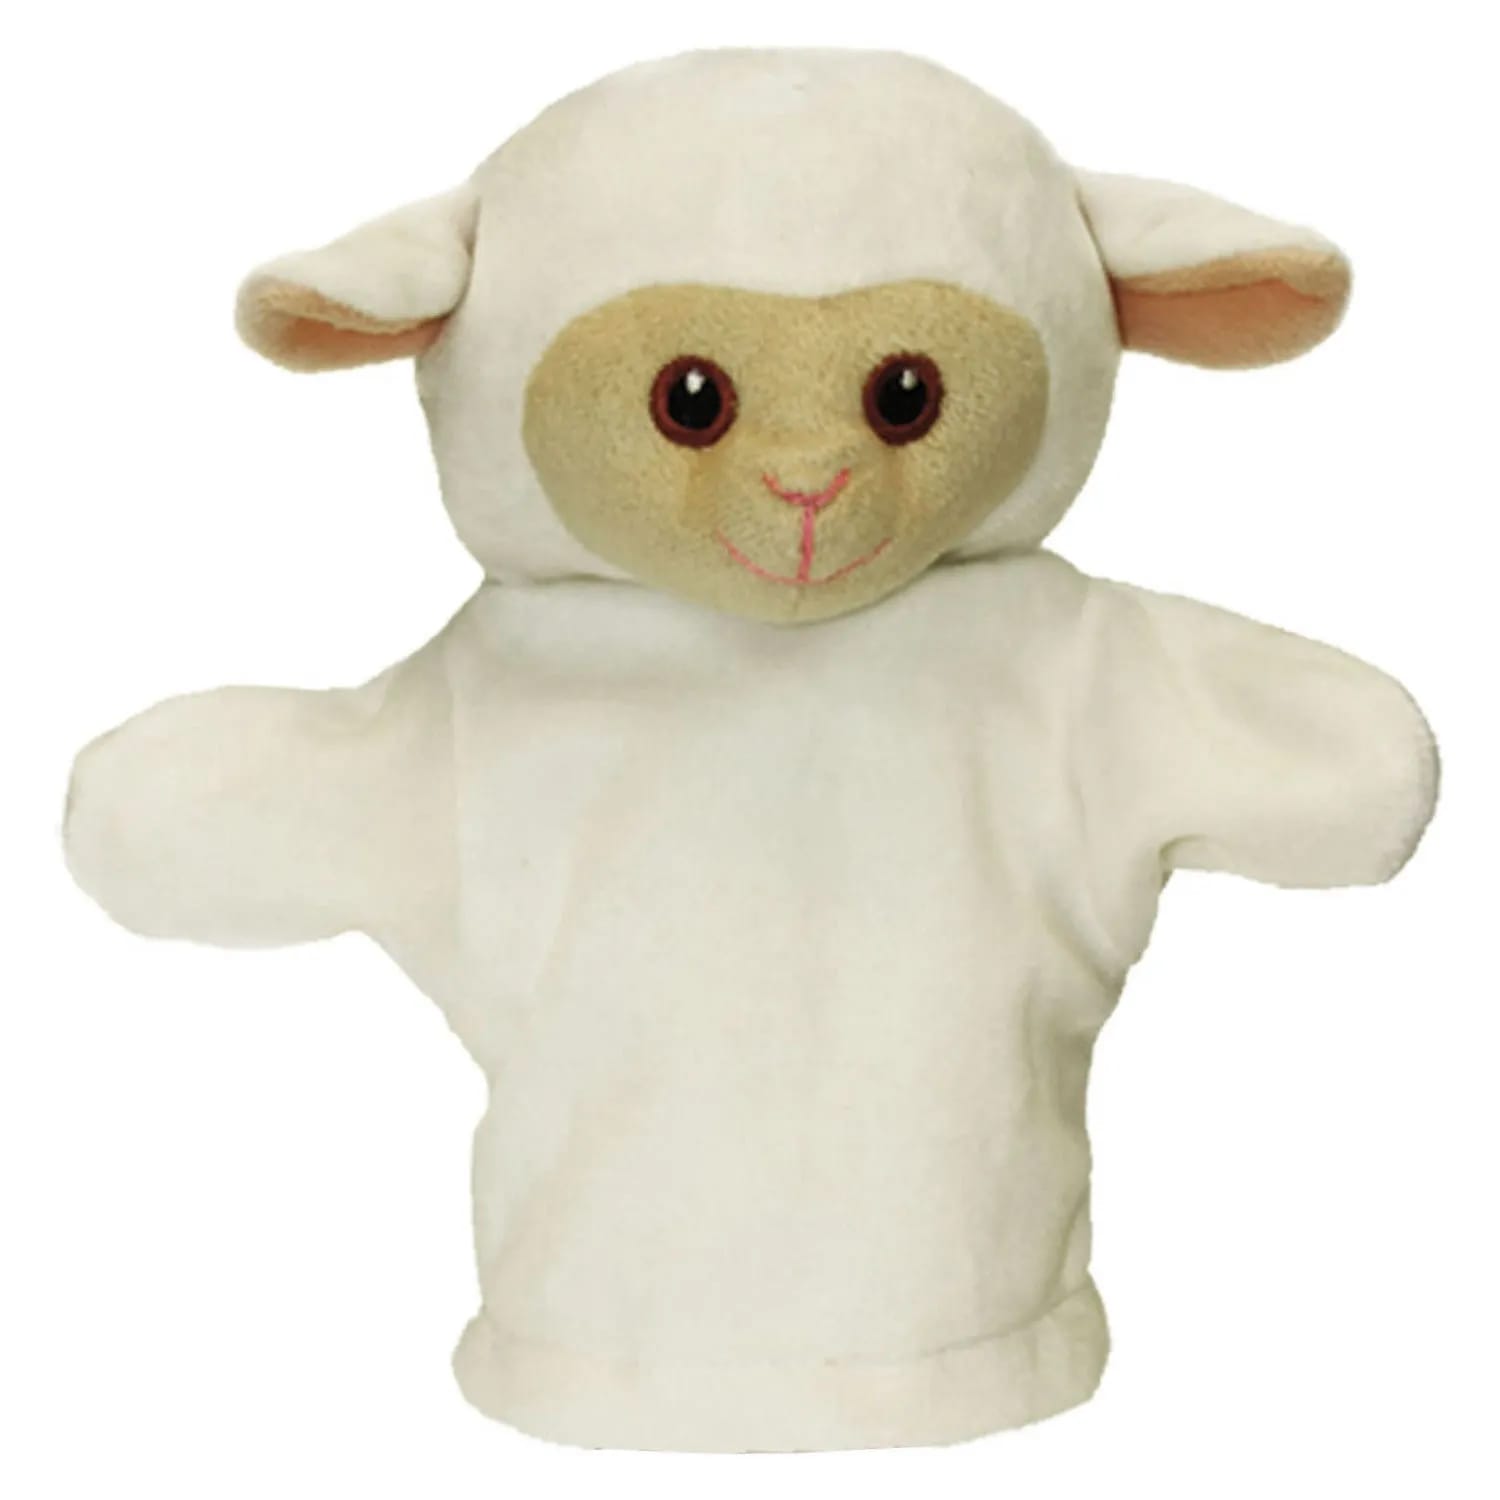 My First Puppet - Lamb Glove Puppet